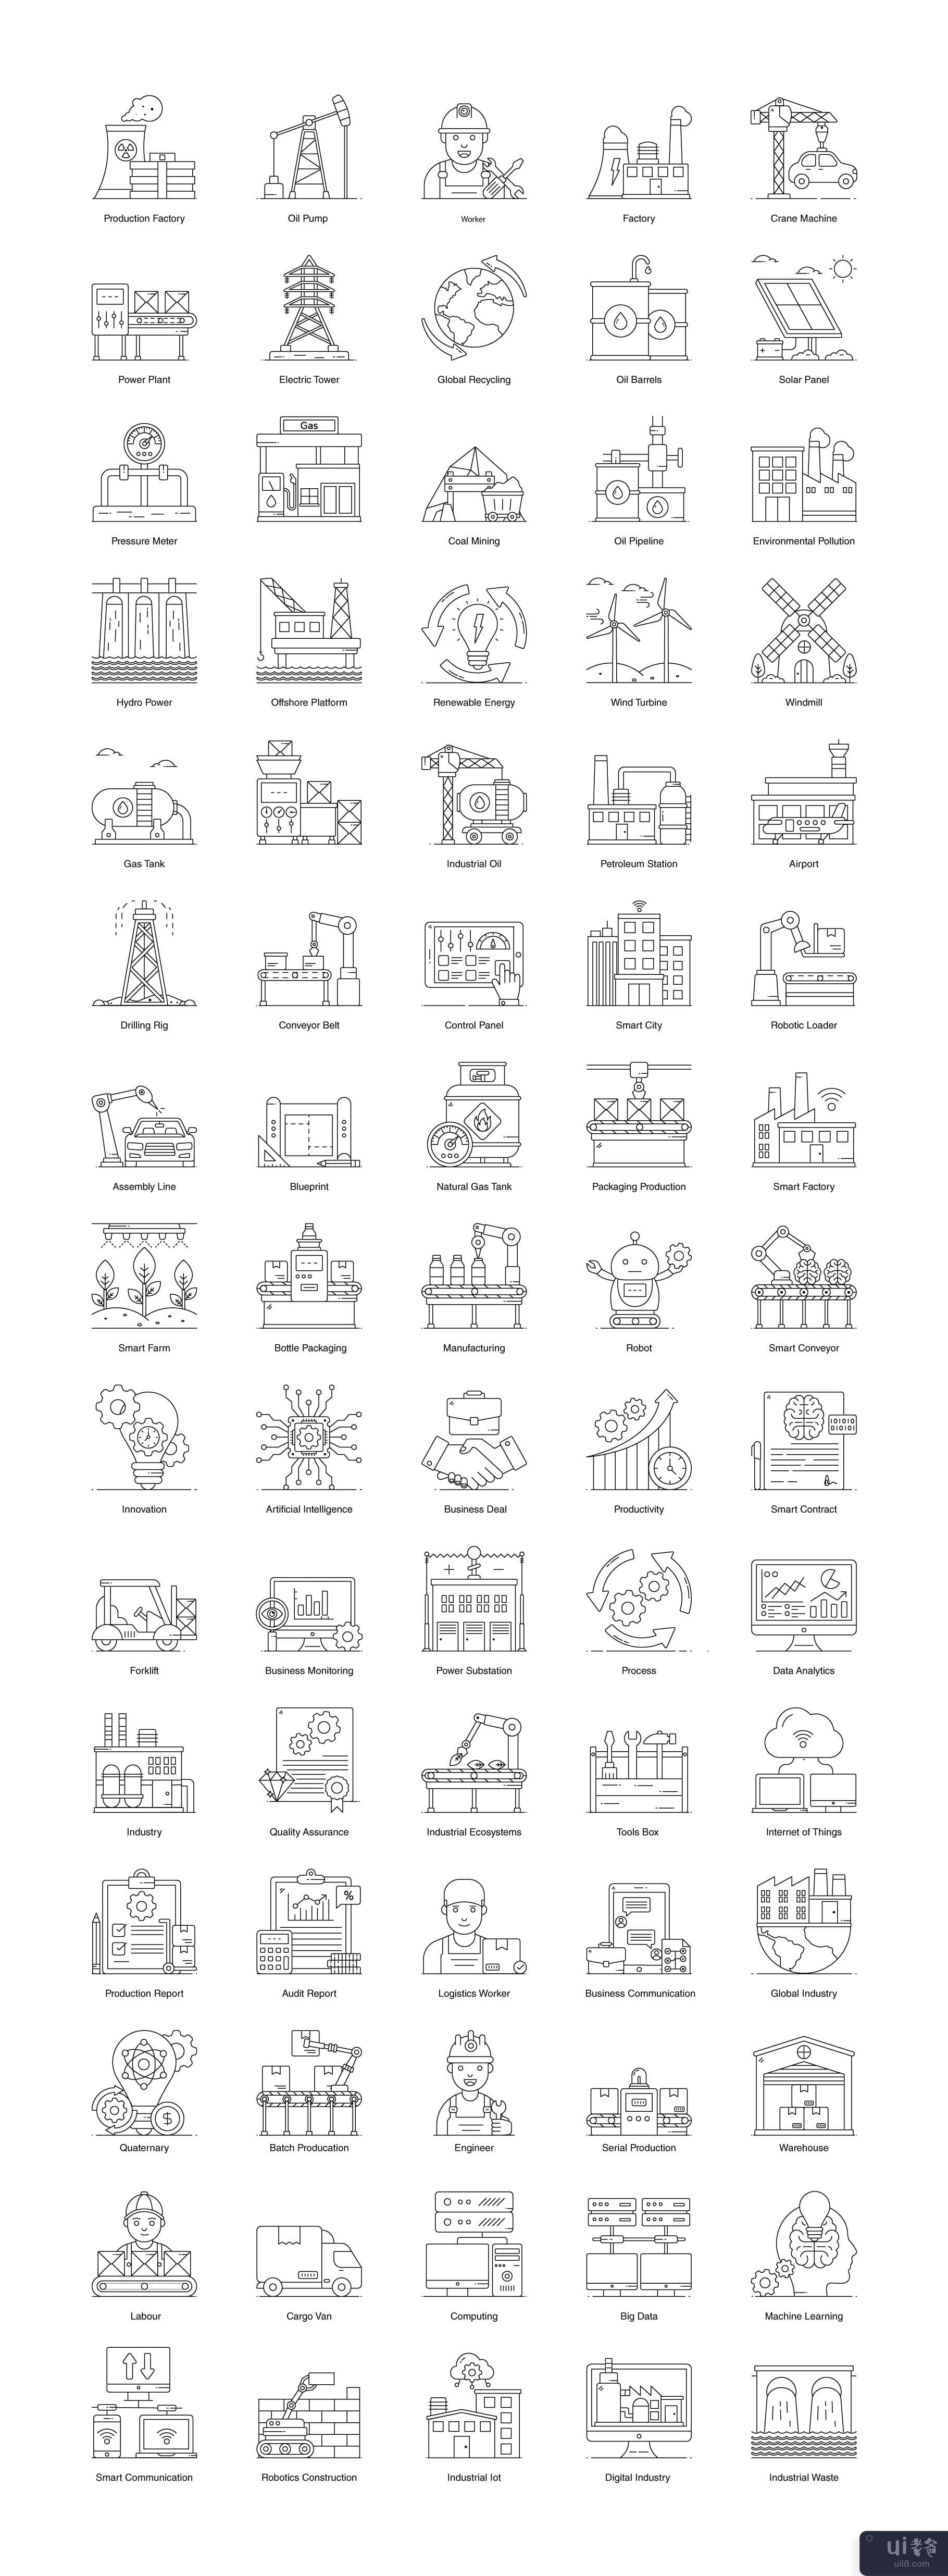 工业和制造图标(Industrial and Manufacturing Icons)插图1